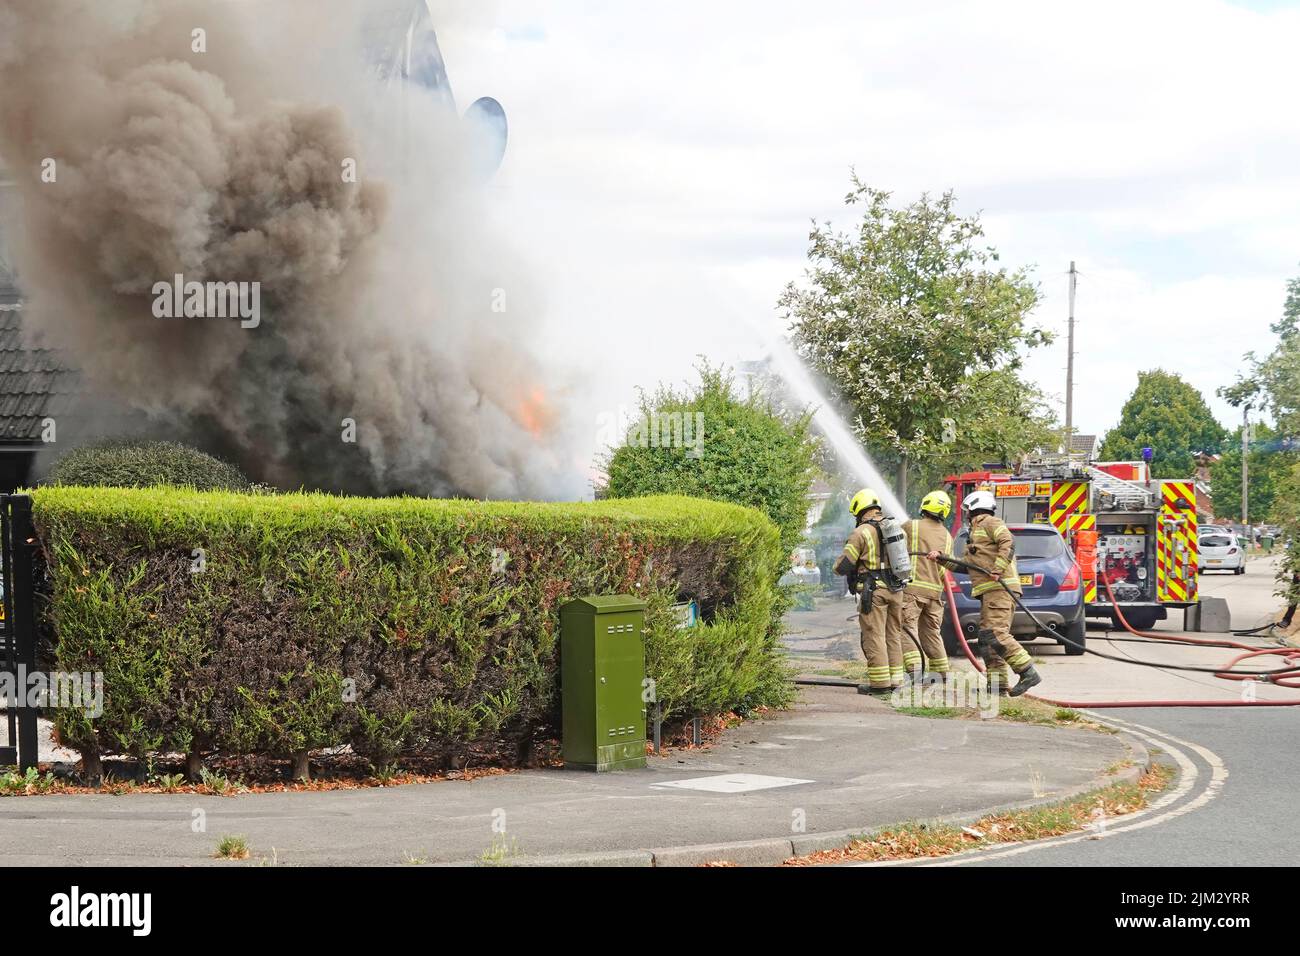 Billowing fumo & fiamme come gruppo di vigili del fuoco AIM getto d'acqua a casa fronte & pareti laterali Essex Fire & Rescue tender strada residenziale Essex Inghilterra UK Foto Stock